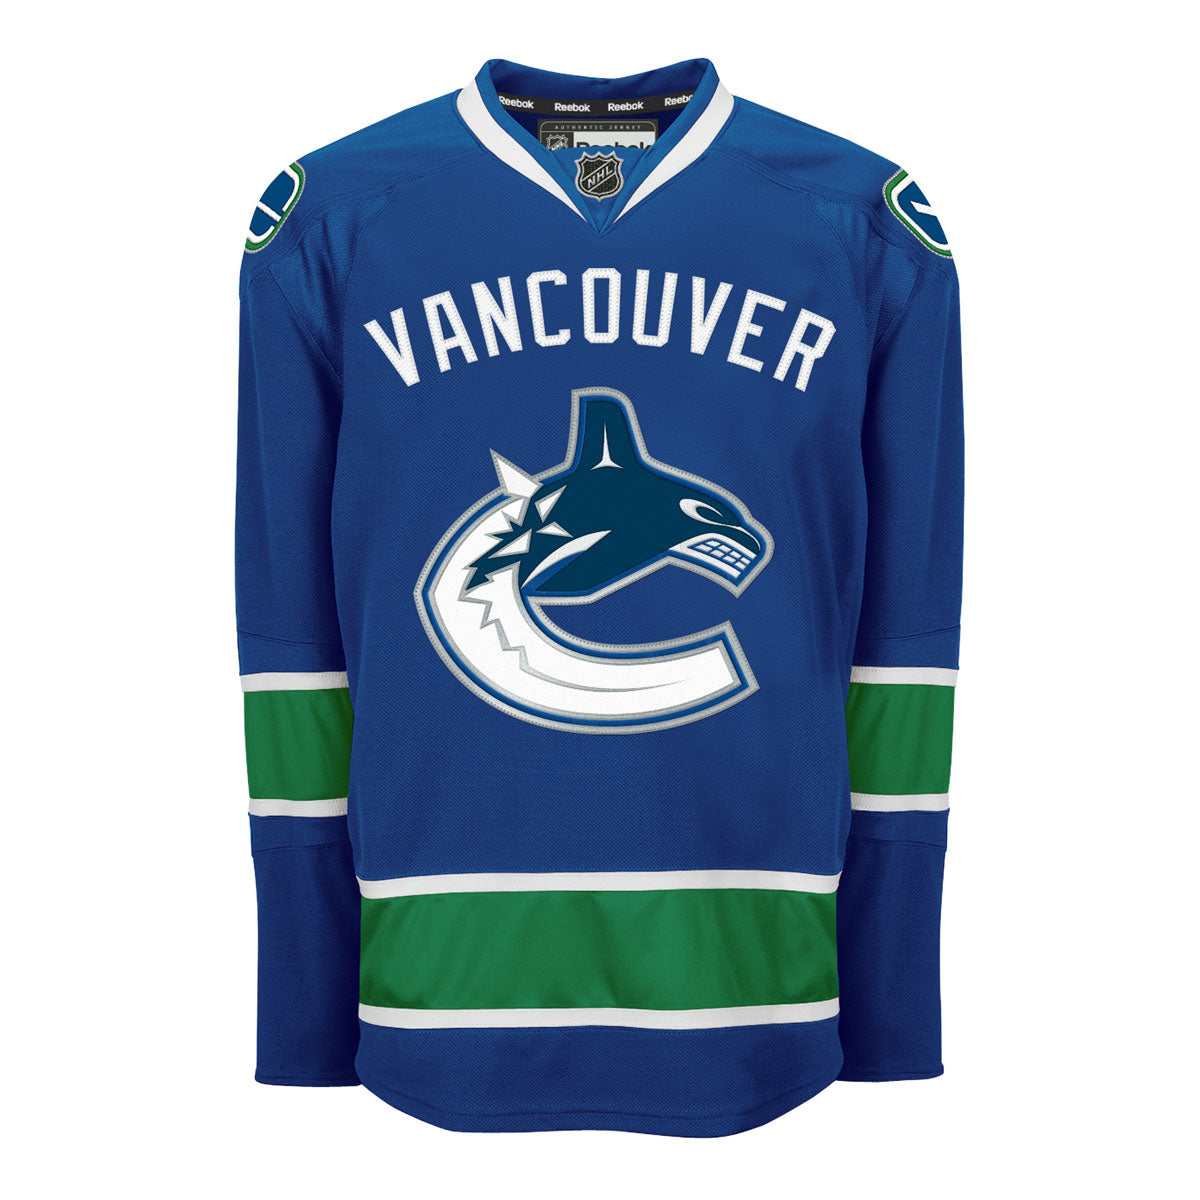 Vancouver Canucks® Uniform 3 pc.